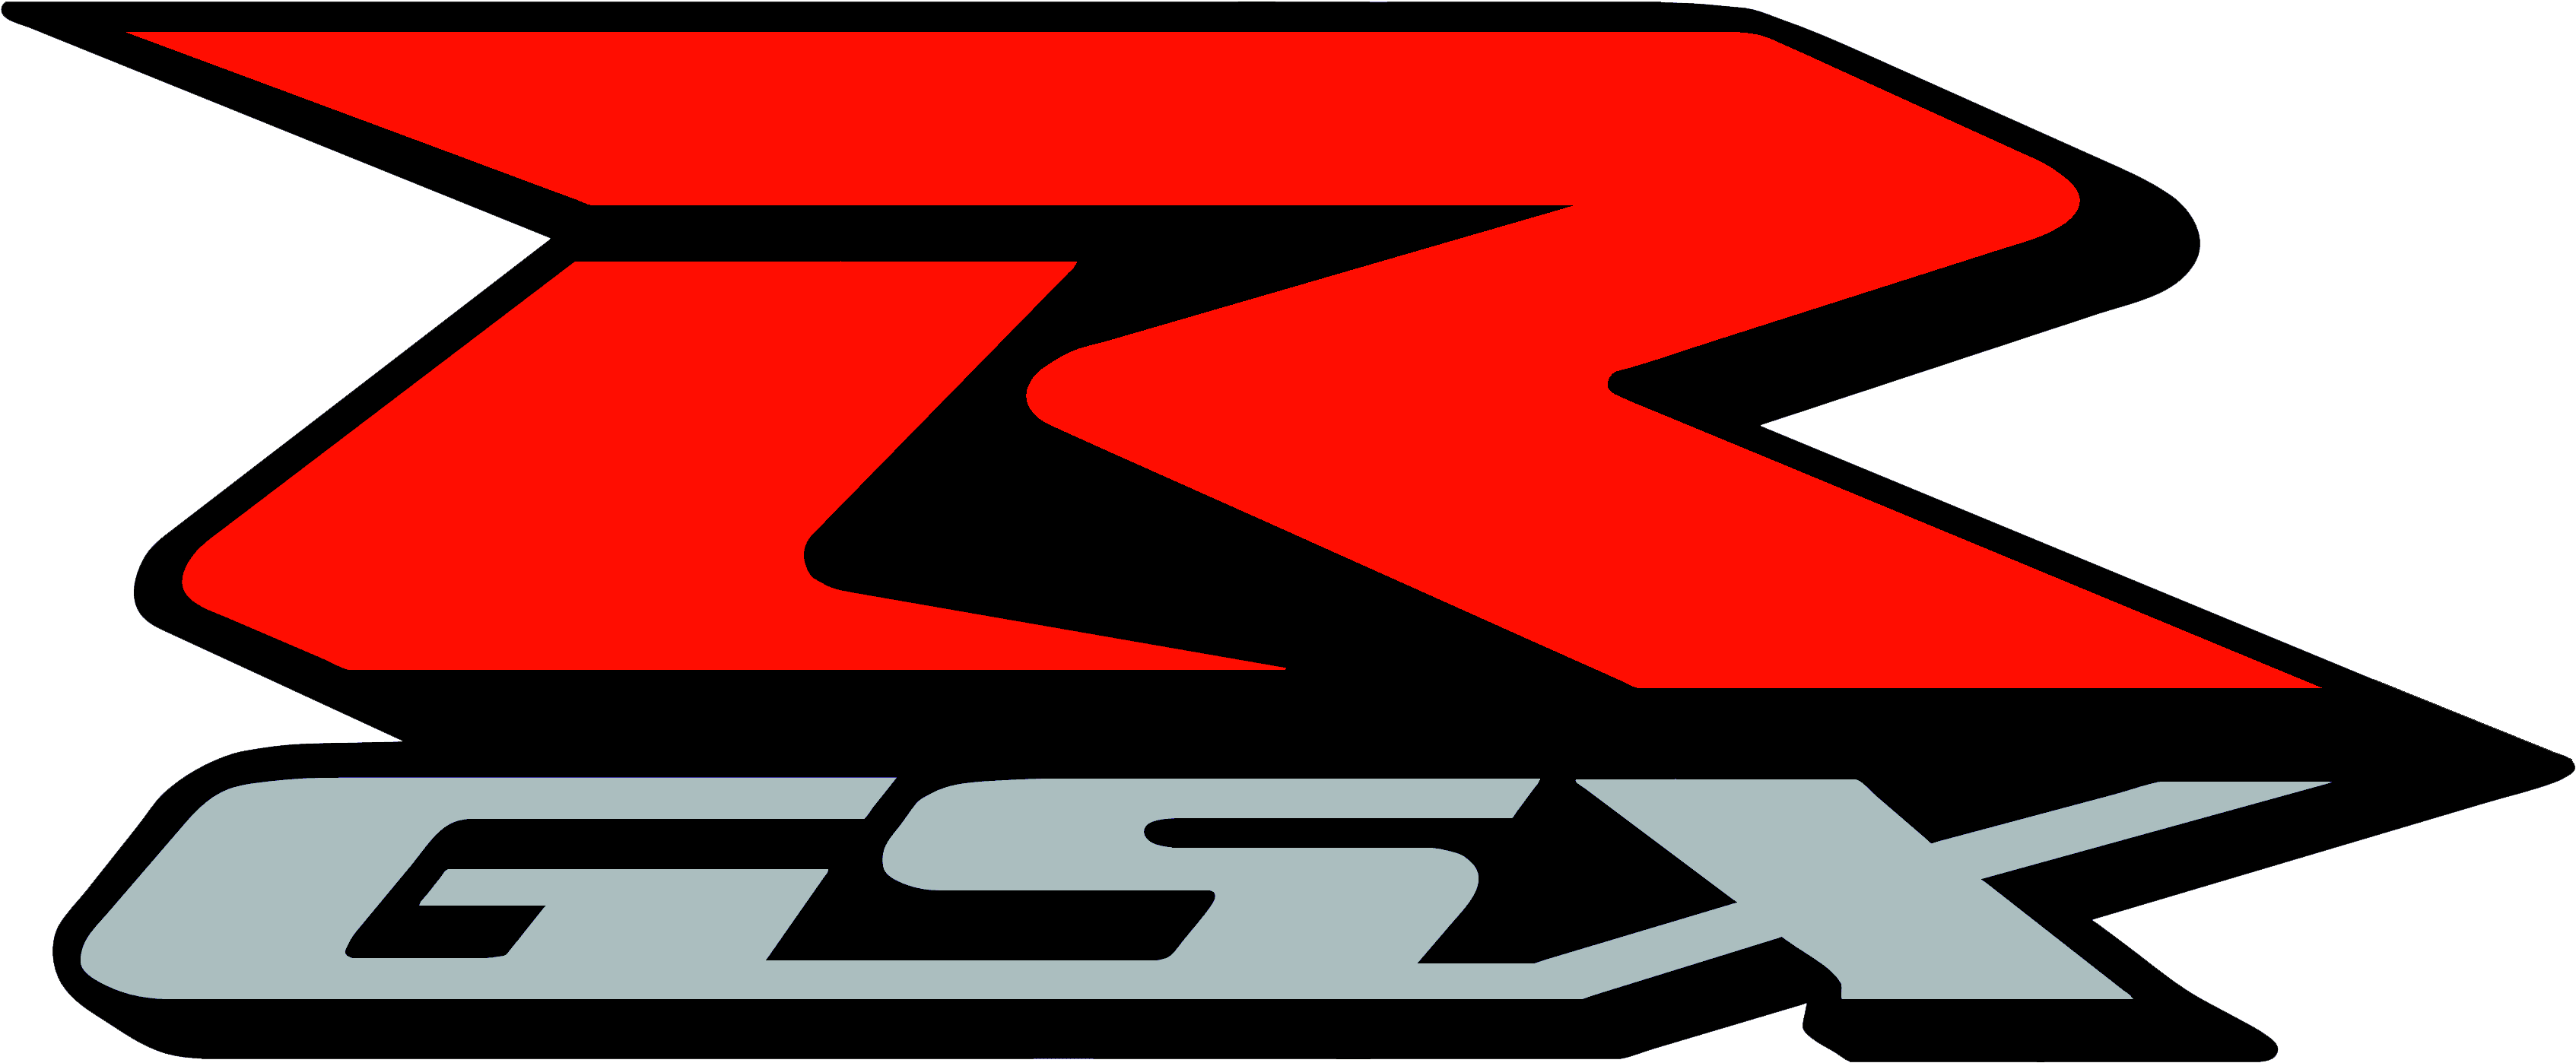 Suzuki Motorcycle Brands Png Logo - Suzuki R Gsx Logo Clipart (3856x1900), Png Download